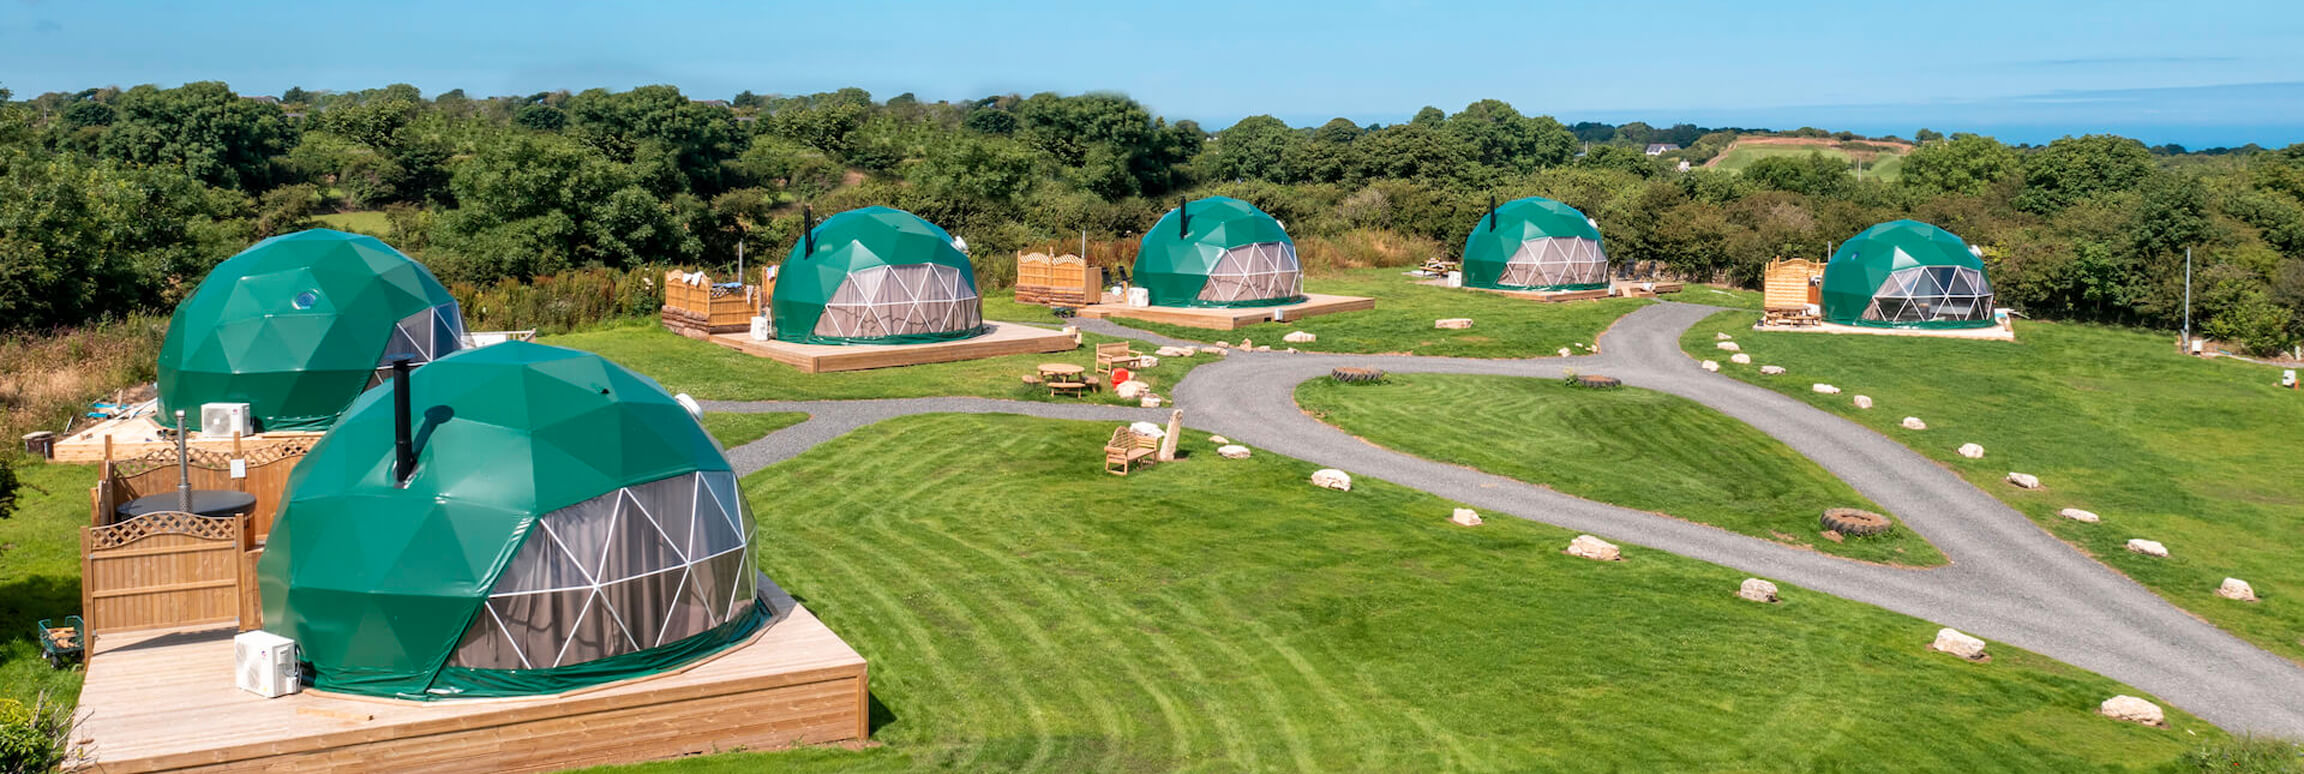 tienda de campaña con cúpula geodésica verde